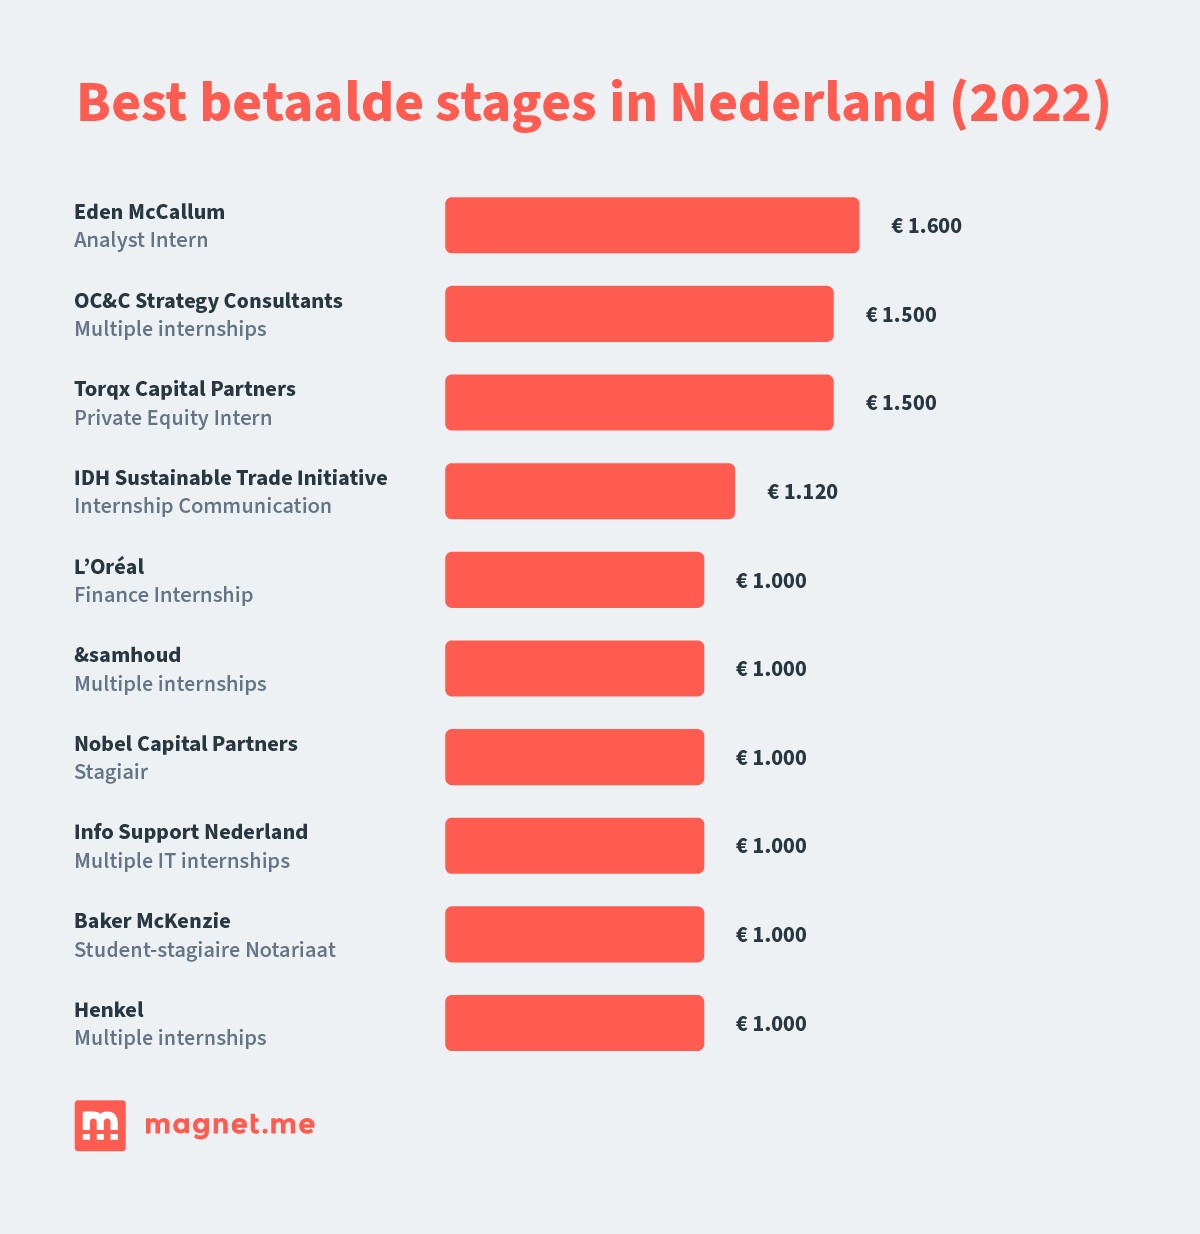 best betaalde stages in nederland 2022